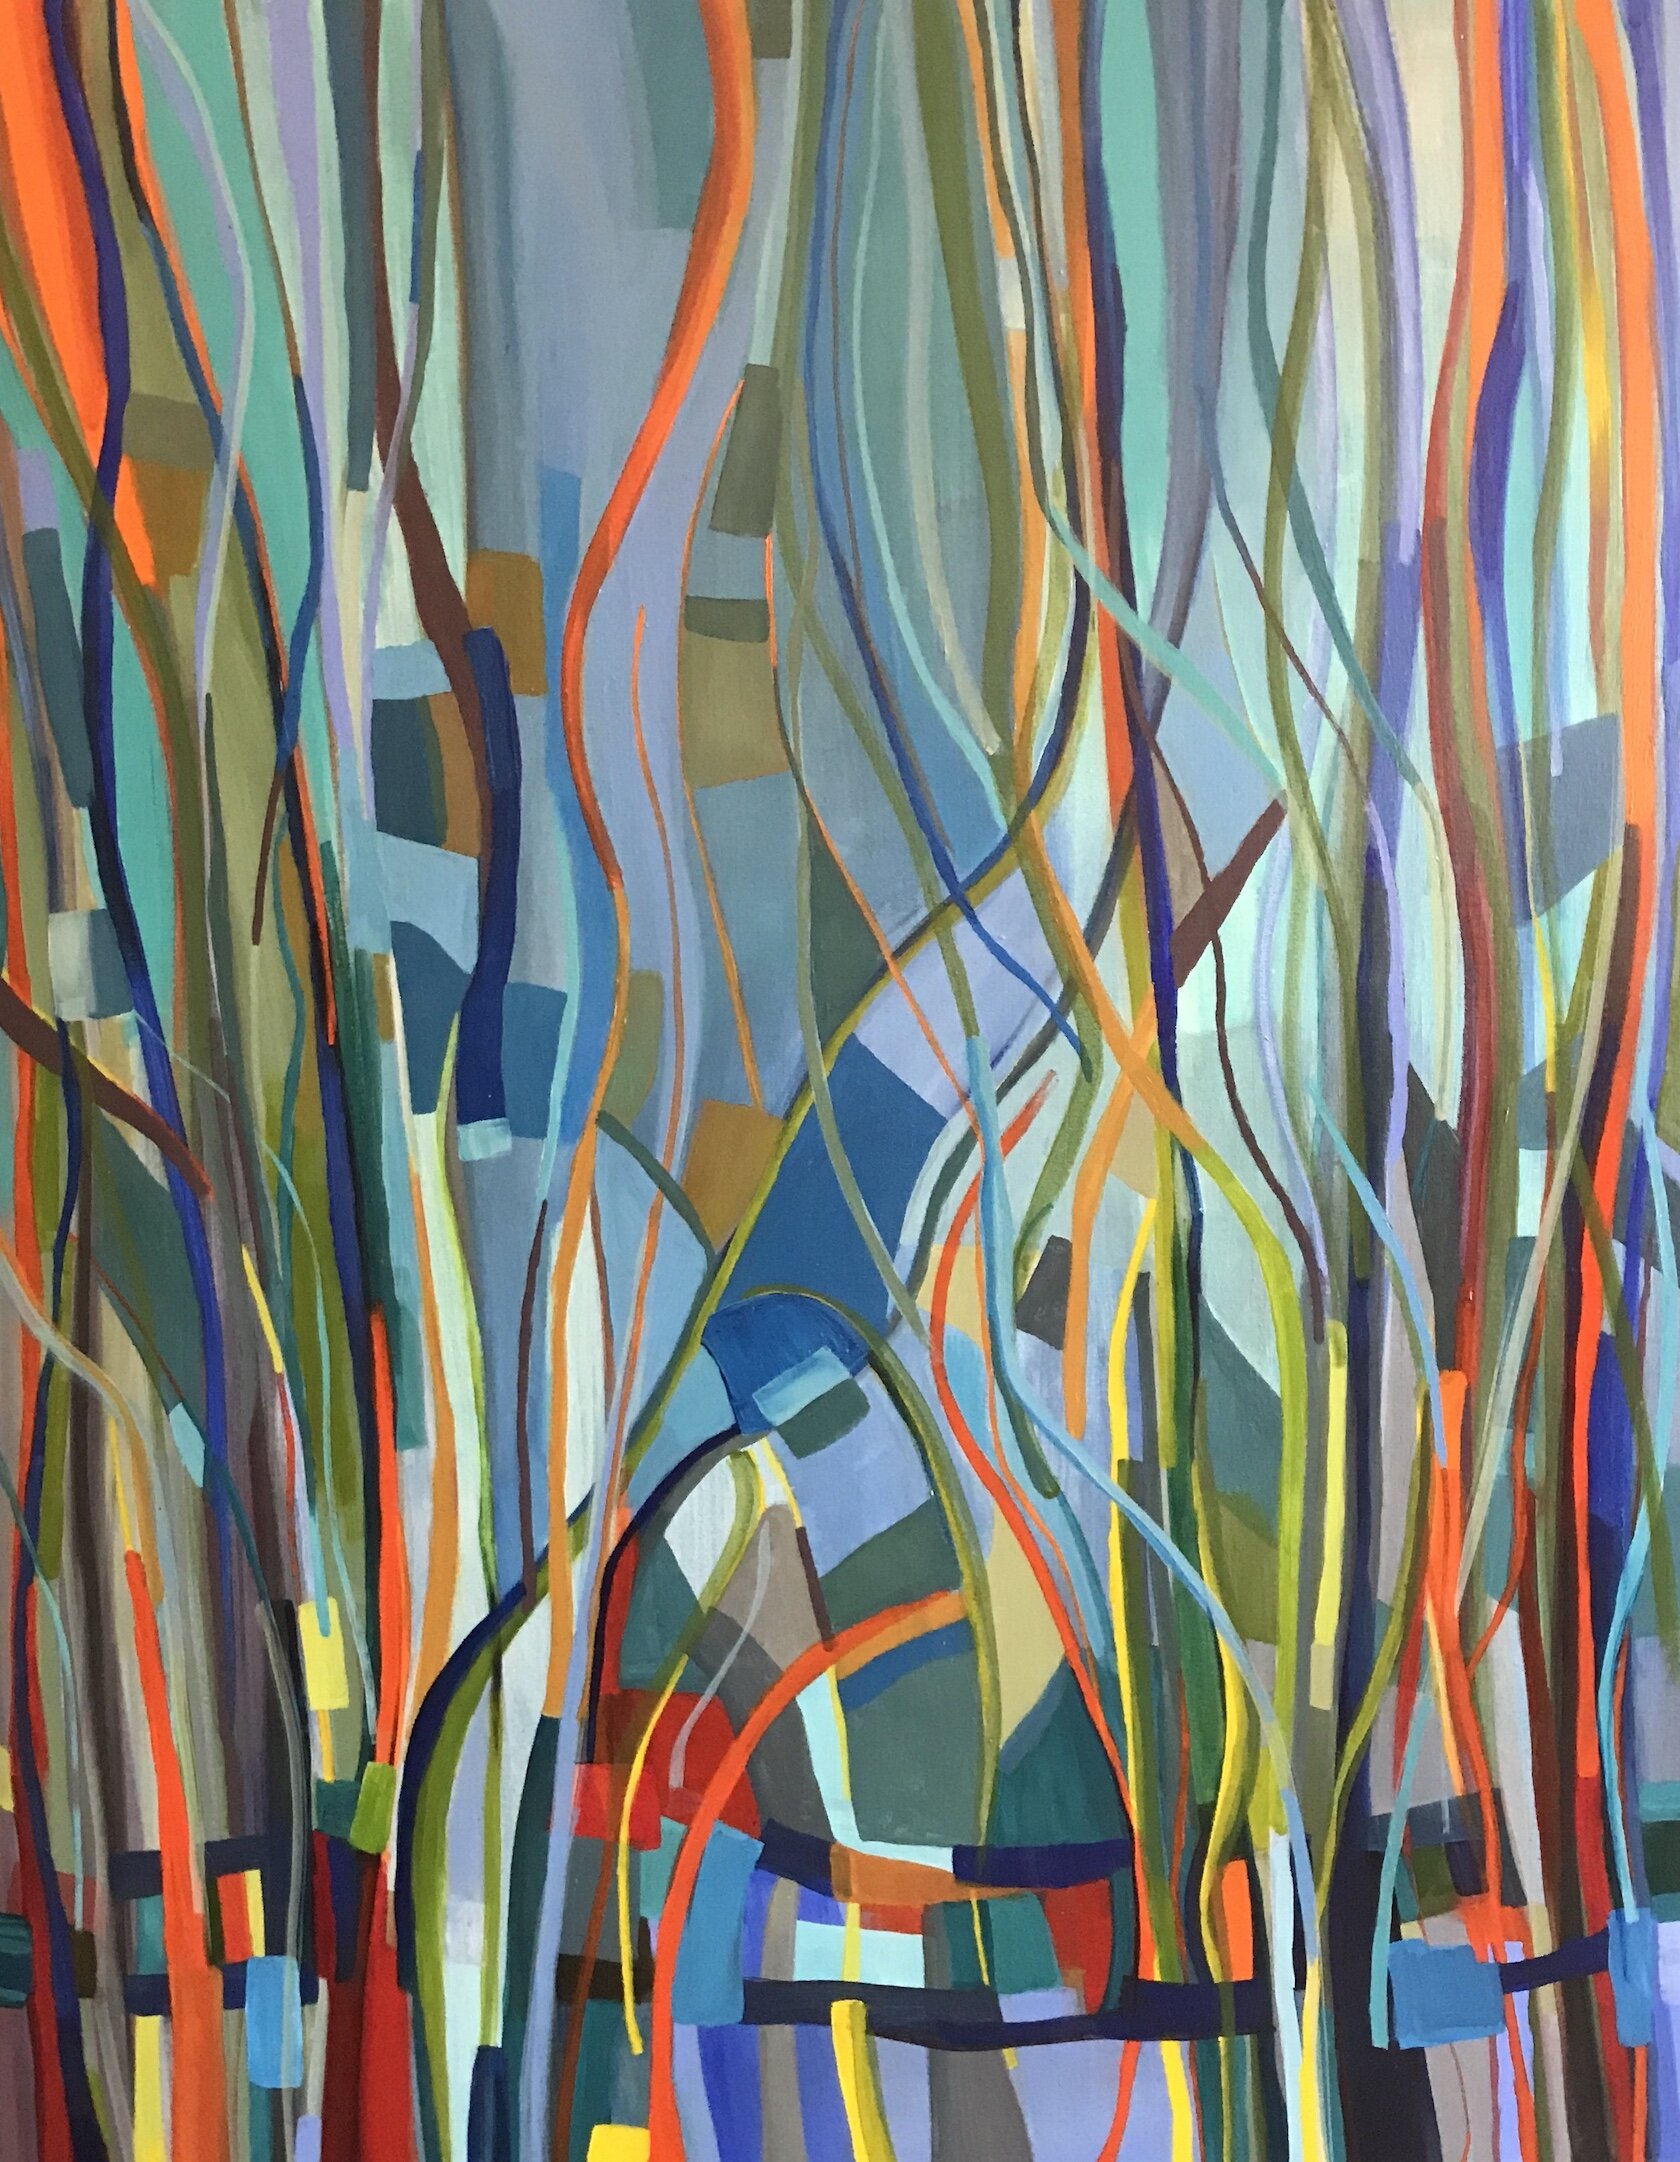    Perennial II  , acrylic on canvas, 60” x 48” 